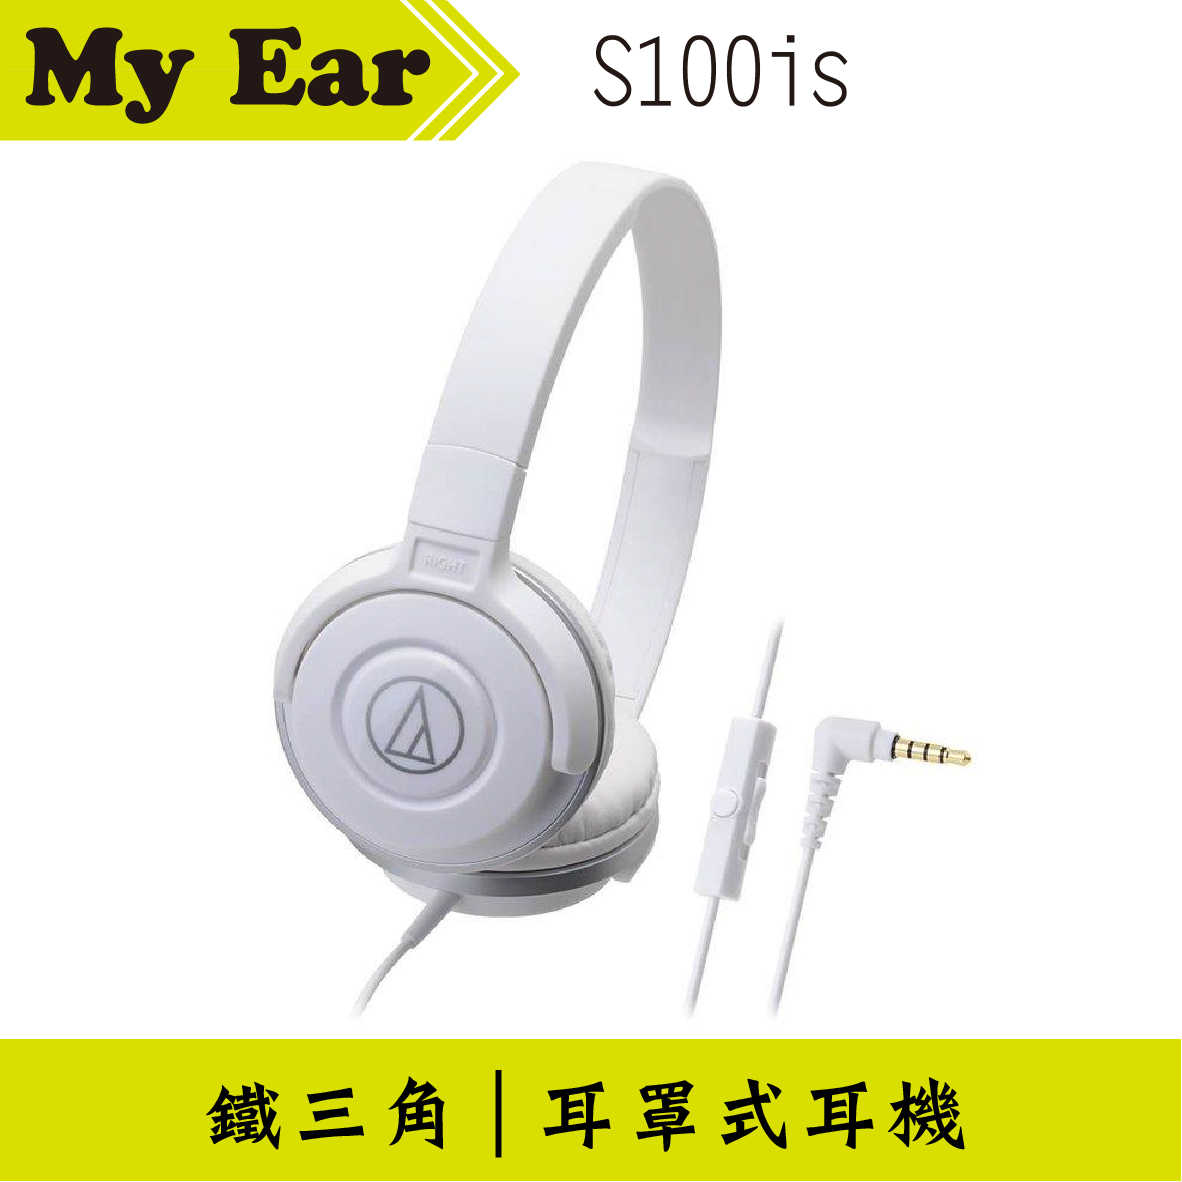 鐵三角 ATH-S100is 線控耳罩式耳機 白色 | My Ear 耳機專門店